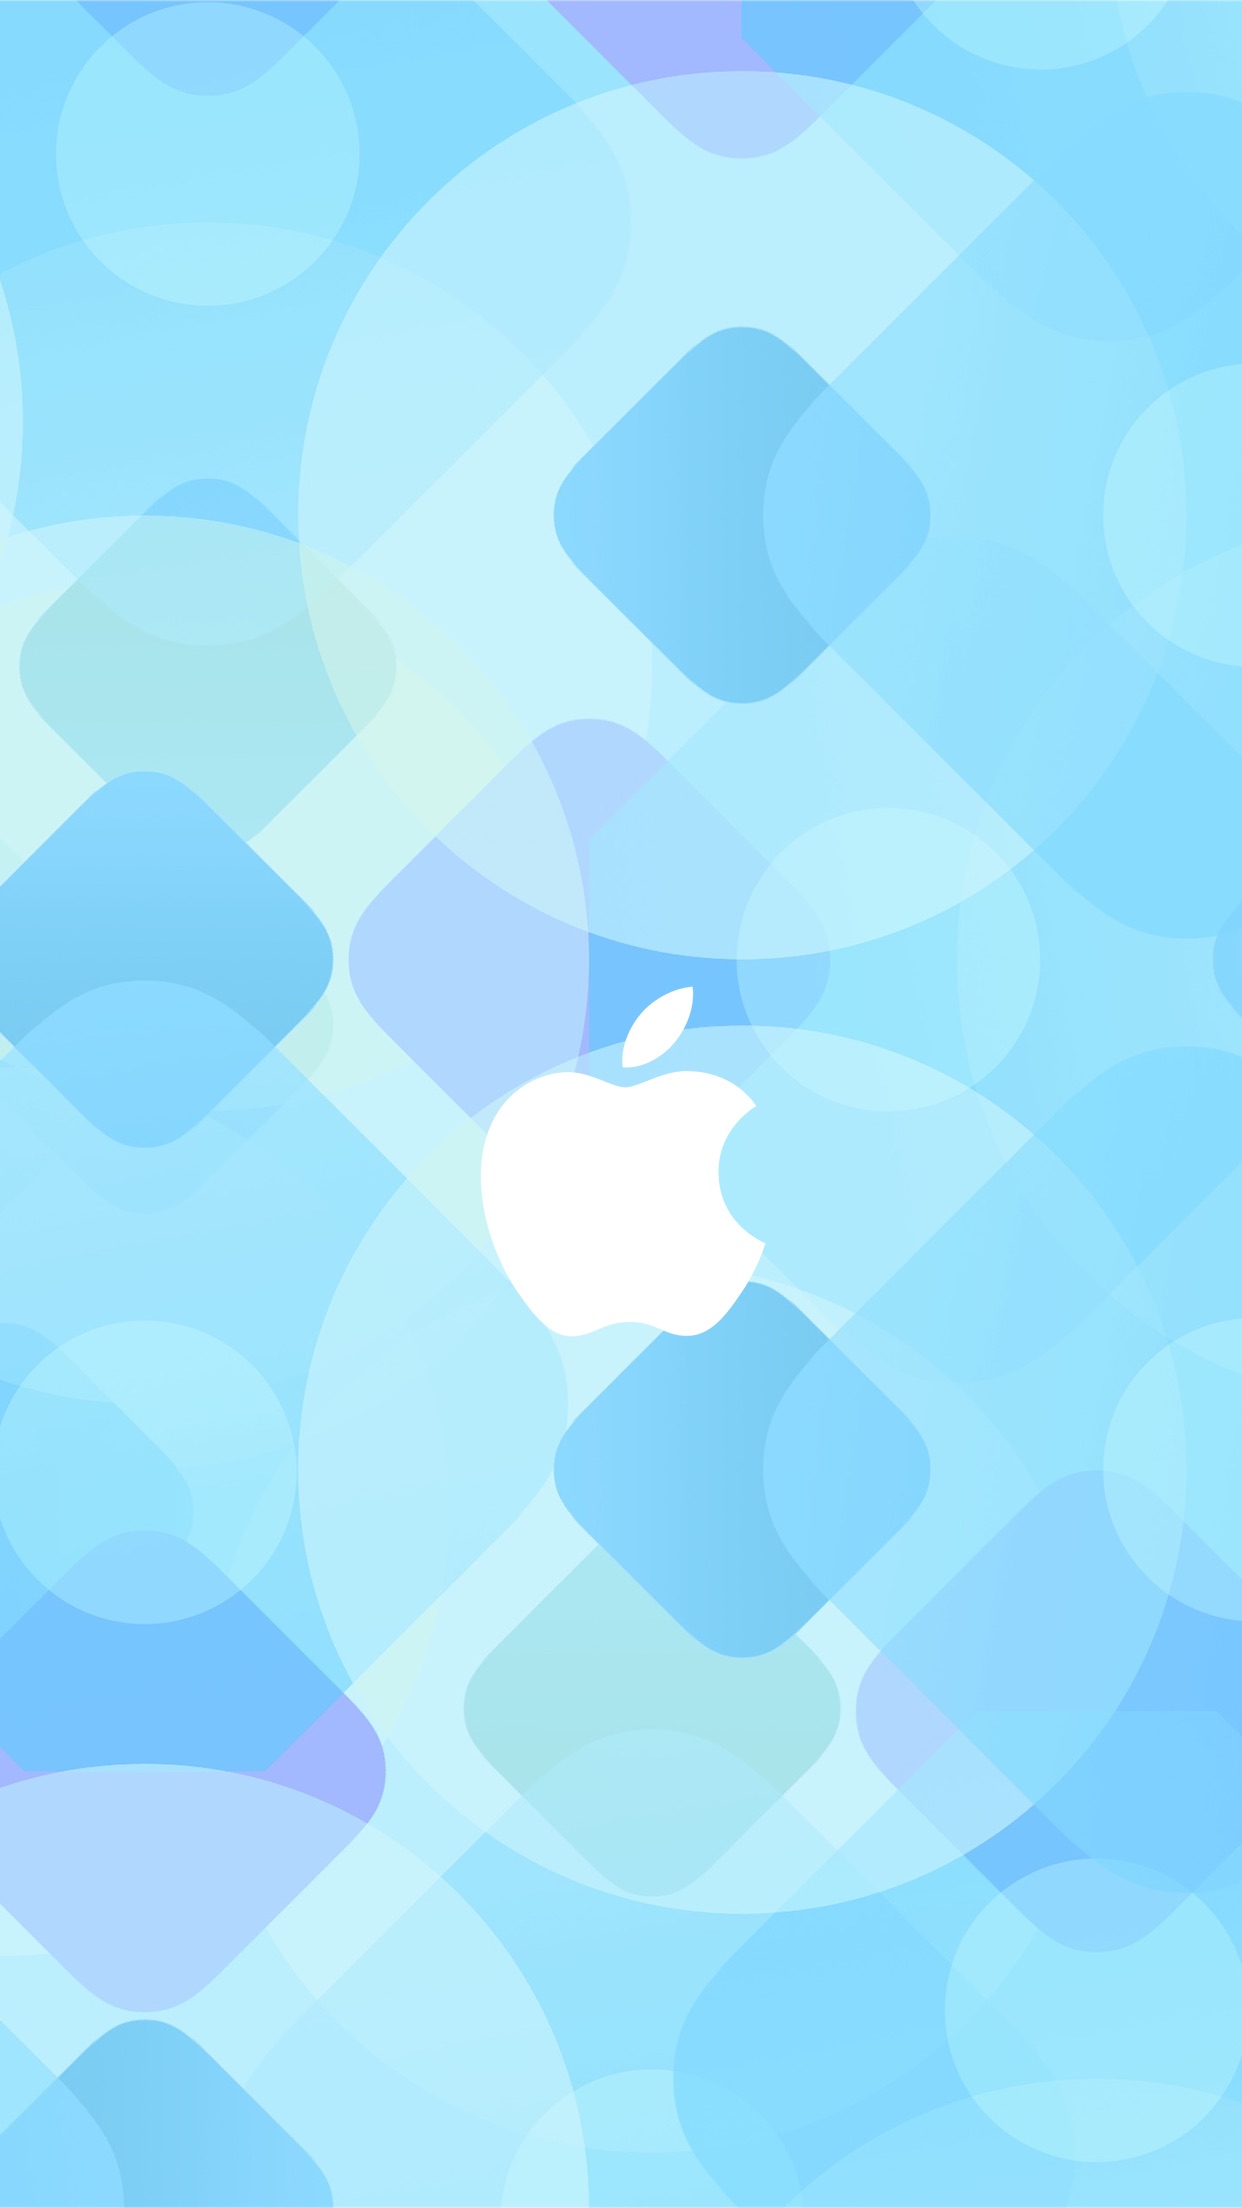 [49+] iOS 9 Wallpapers iPad on WallpaperSafari